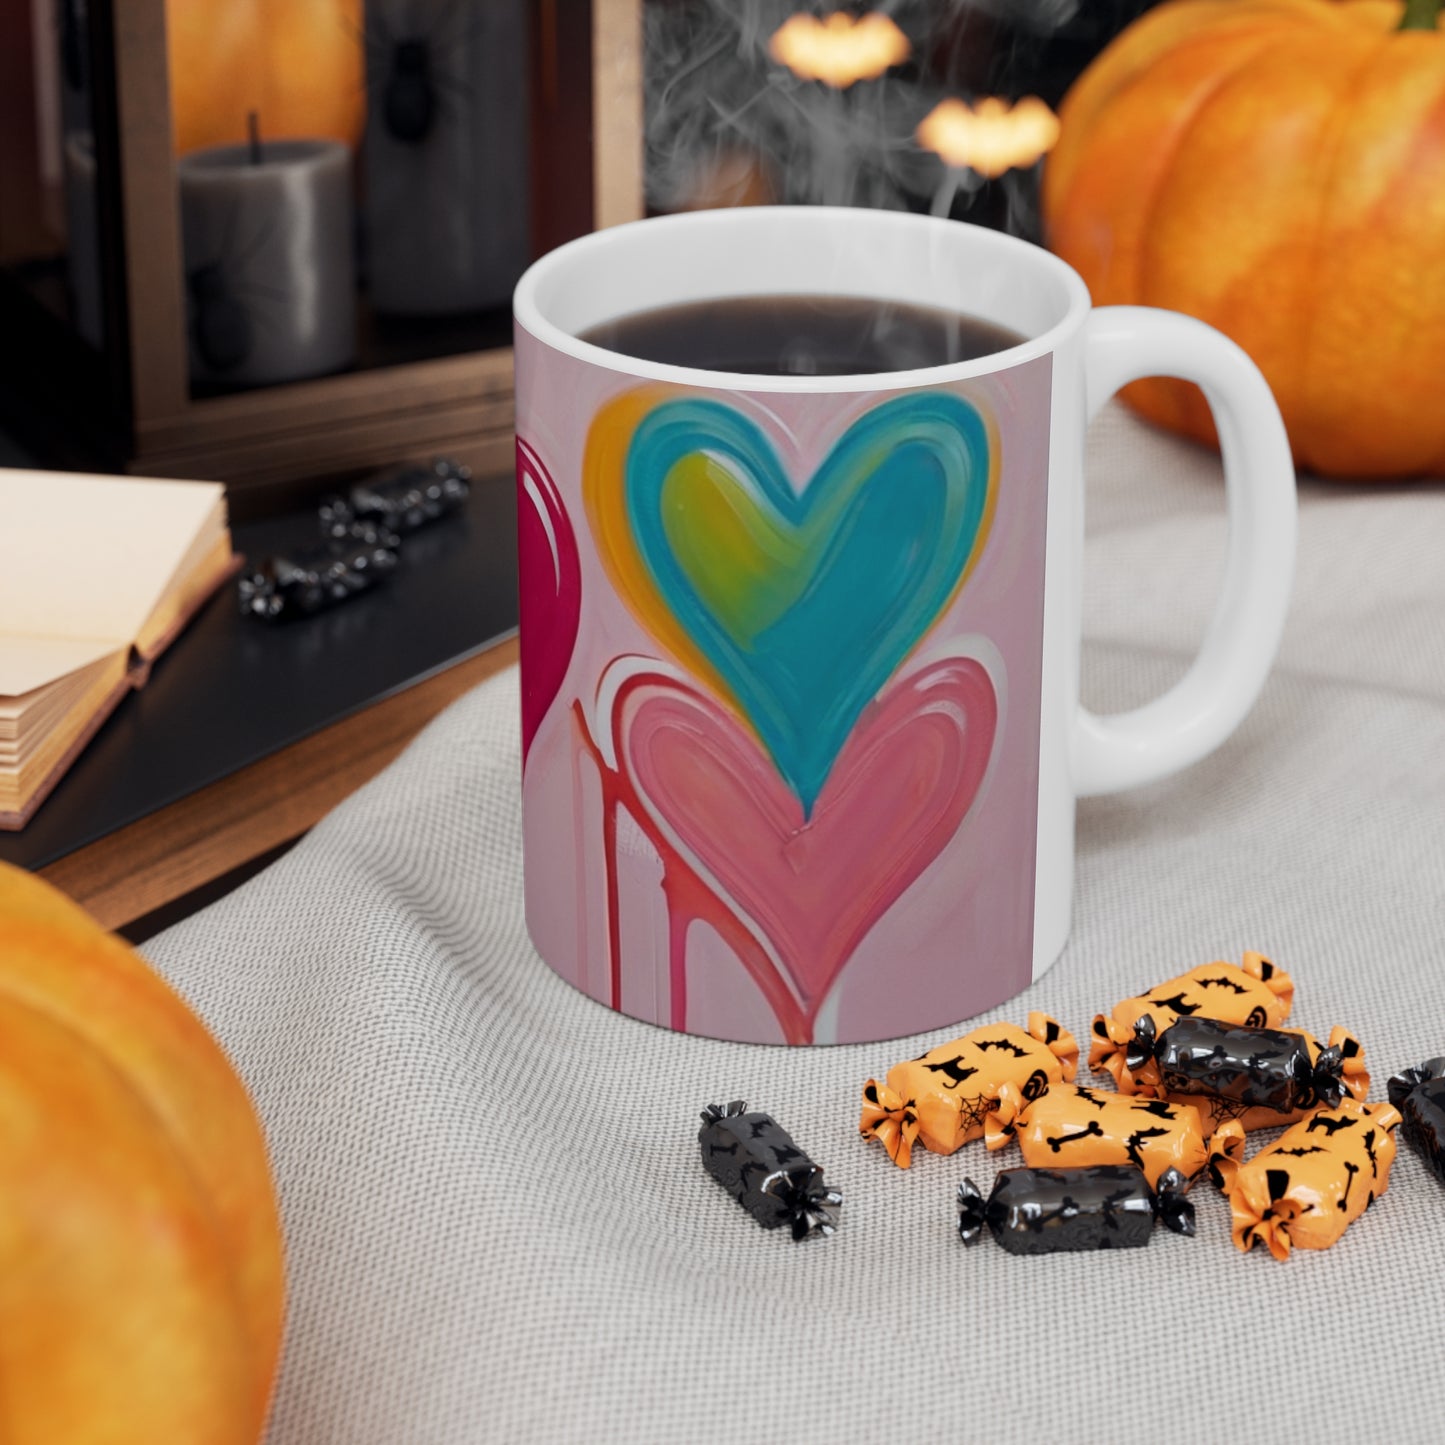 Multicoloured Love Hearts Mug - Ceramic Coffee Mug 11oz